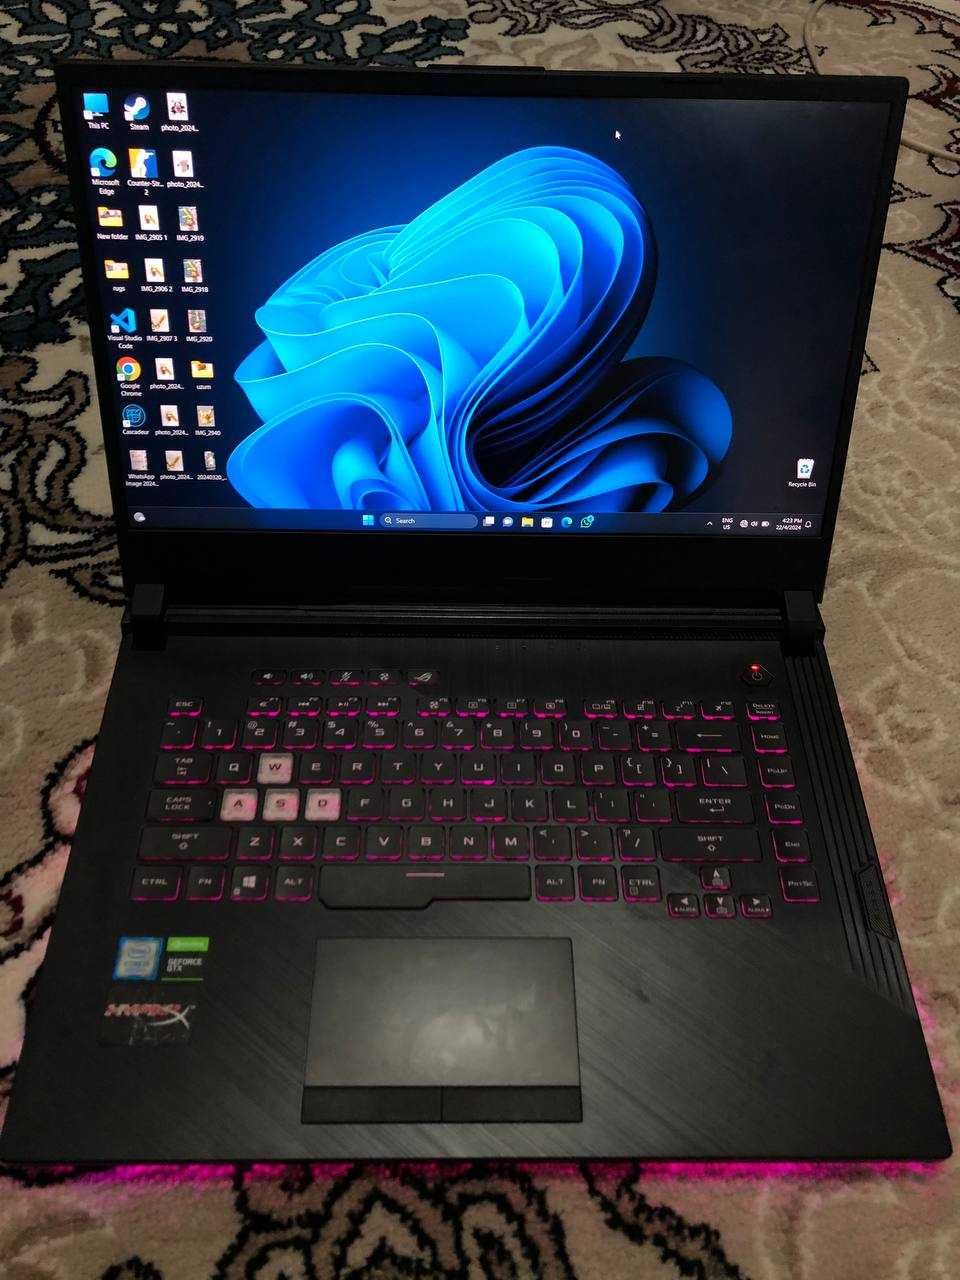 ASUS Rog Strix GT531 Gaming Laptop